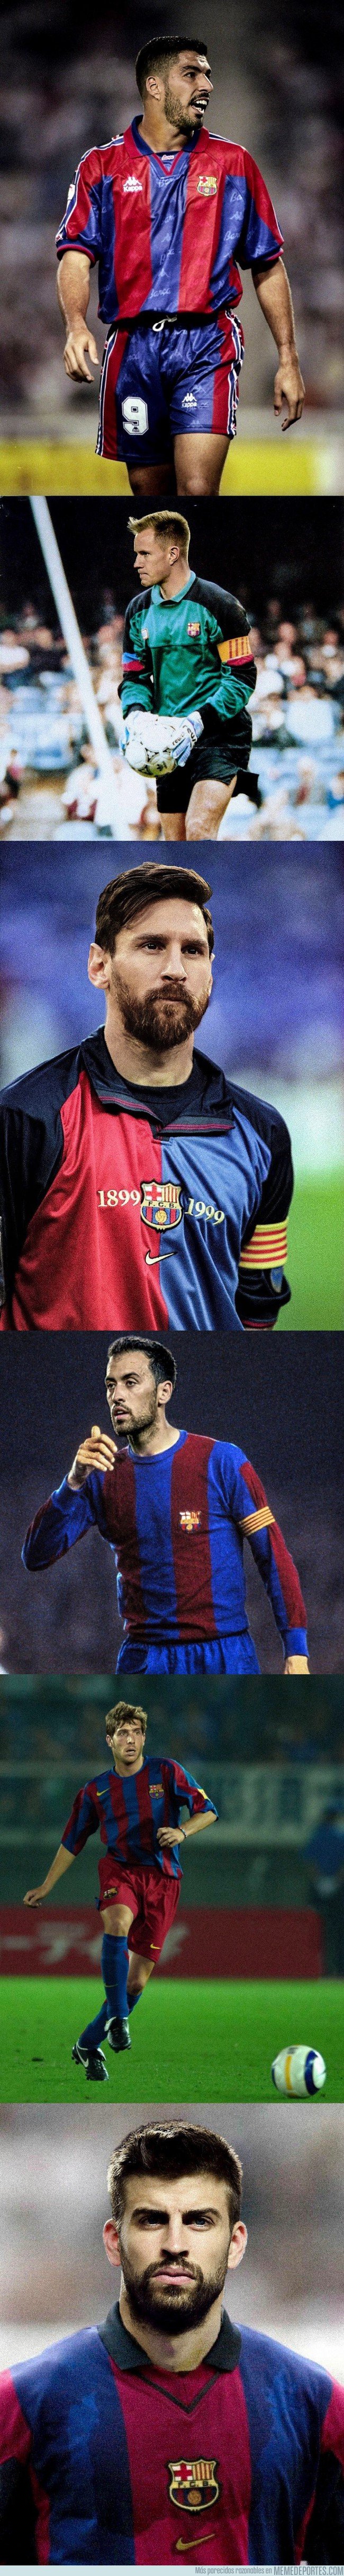 1047708 - Jugadores del Barça actual en vestimentas vintage, vía @Barca__pictures